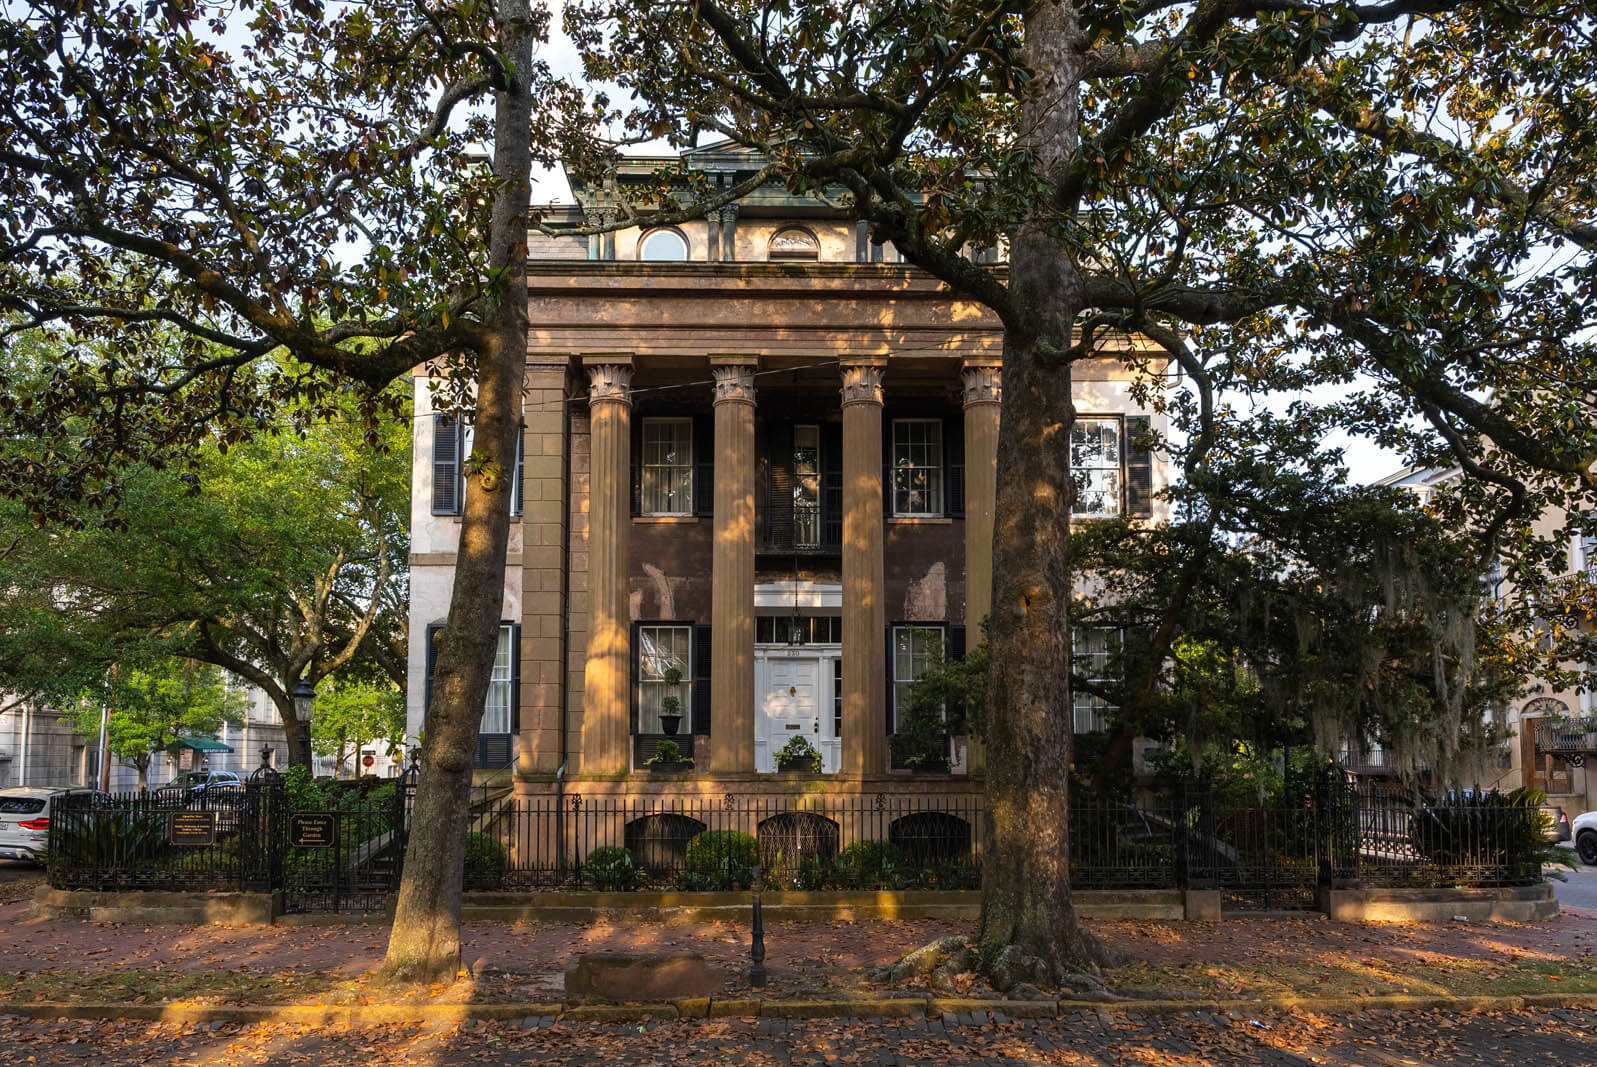 Harper Fowlkes House on Orleans Square in Savannah Ga